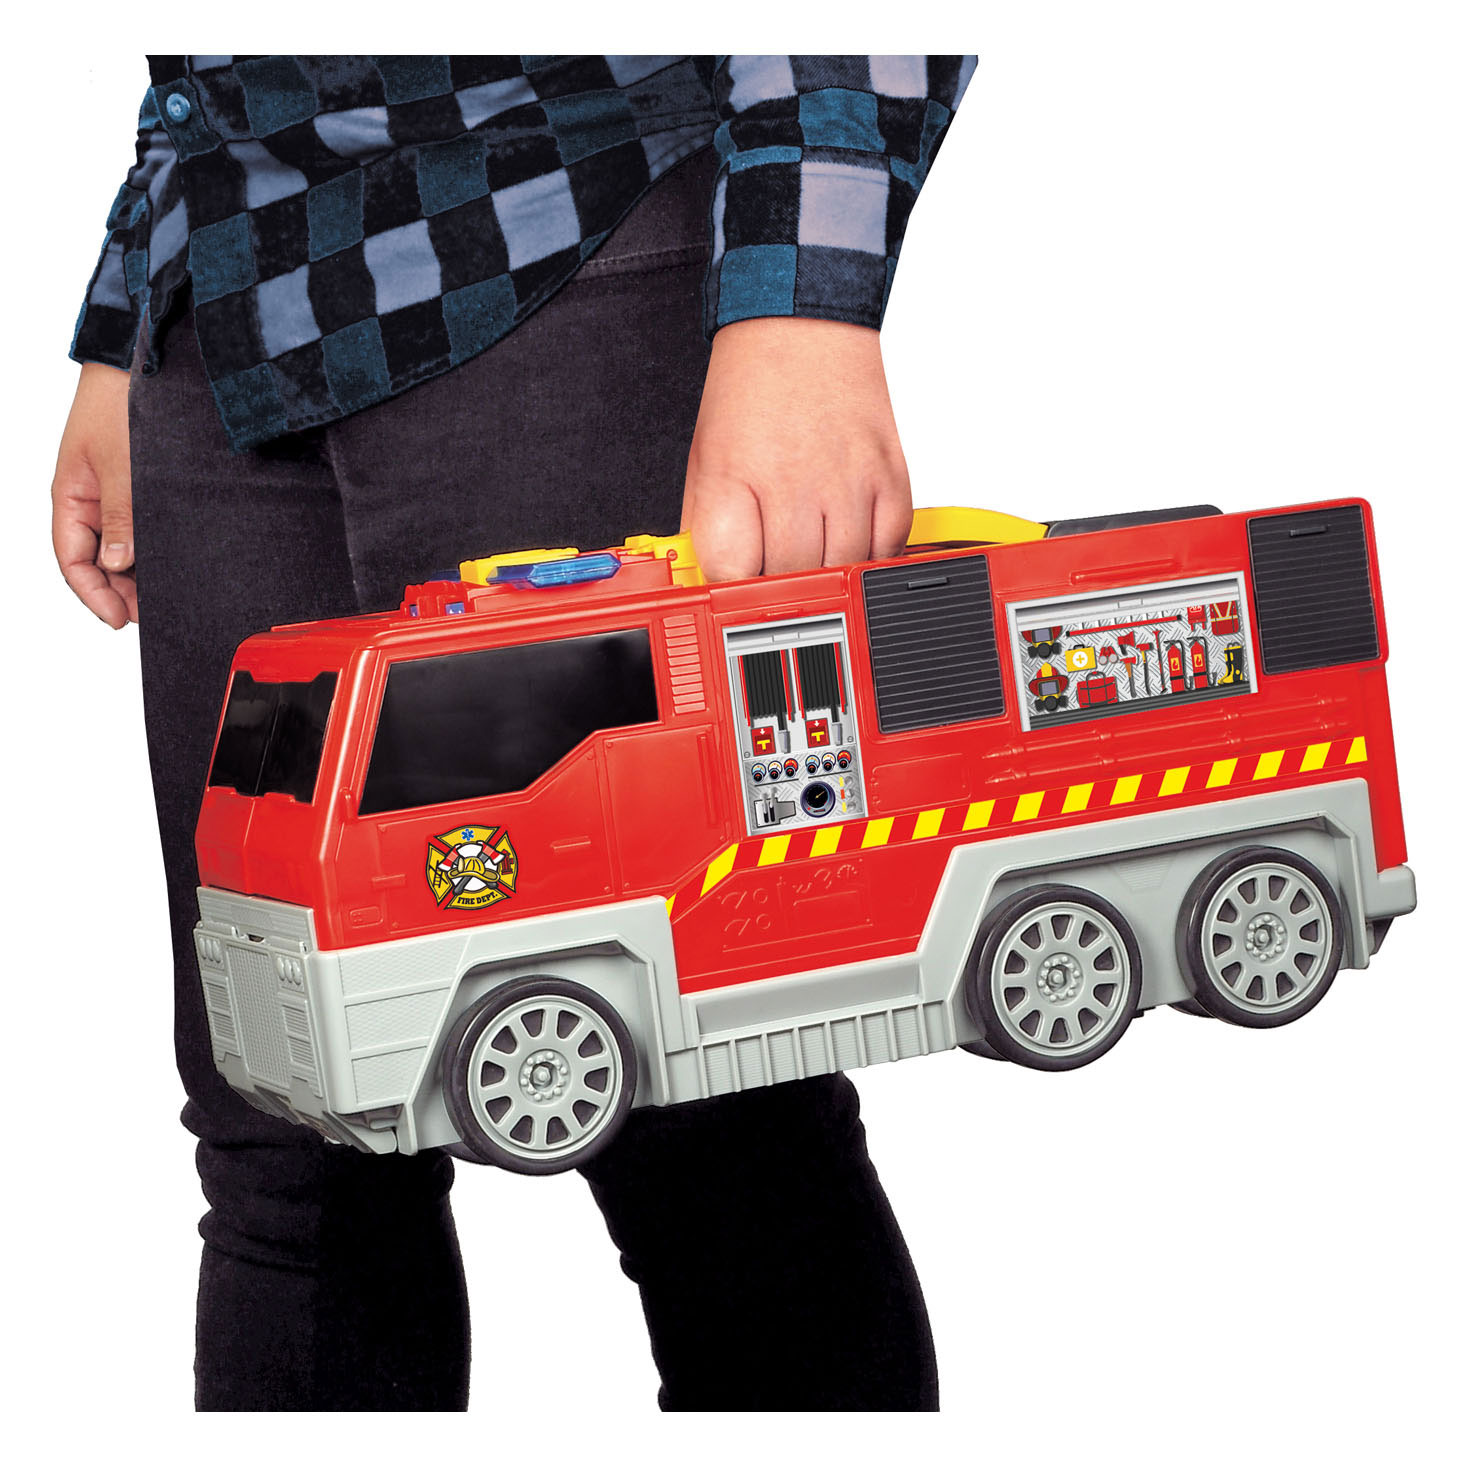 Dickie ausklappbares Feuerwehrauto und Garagen-Spielset